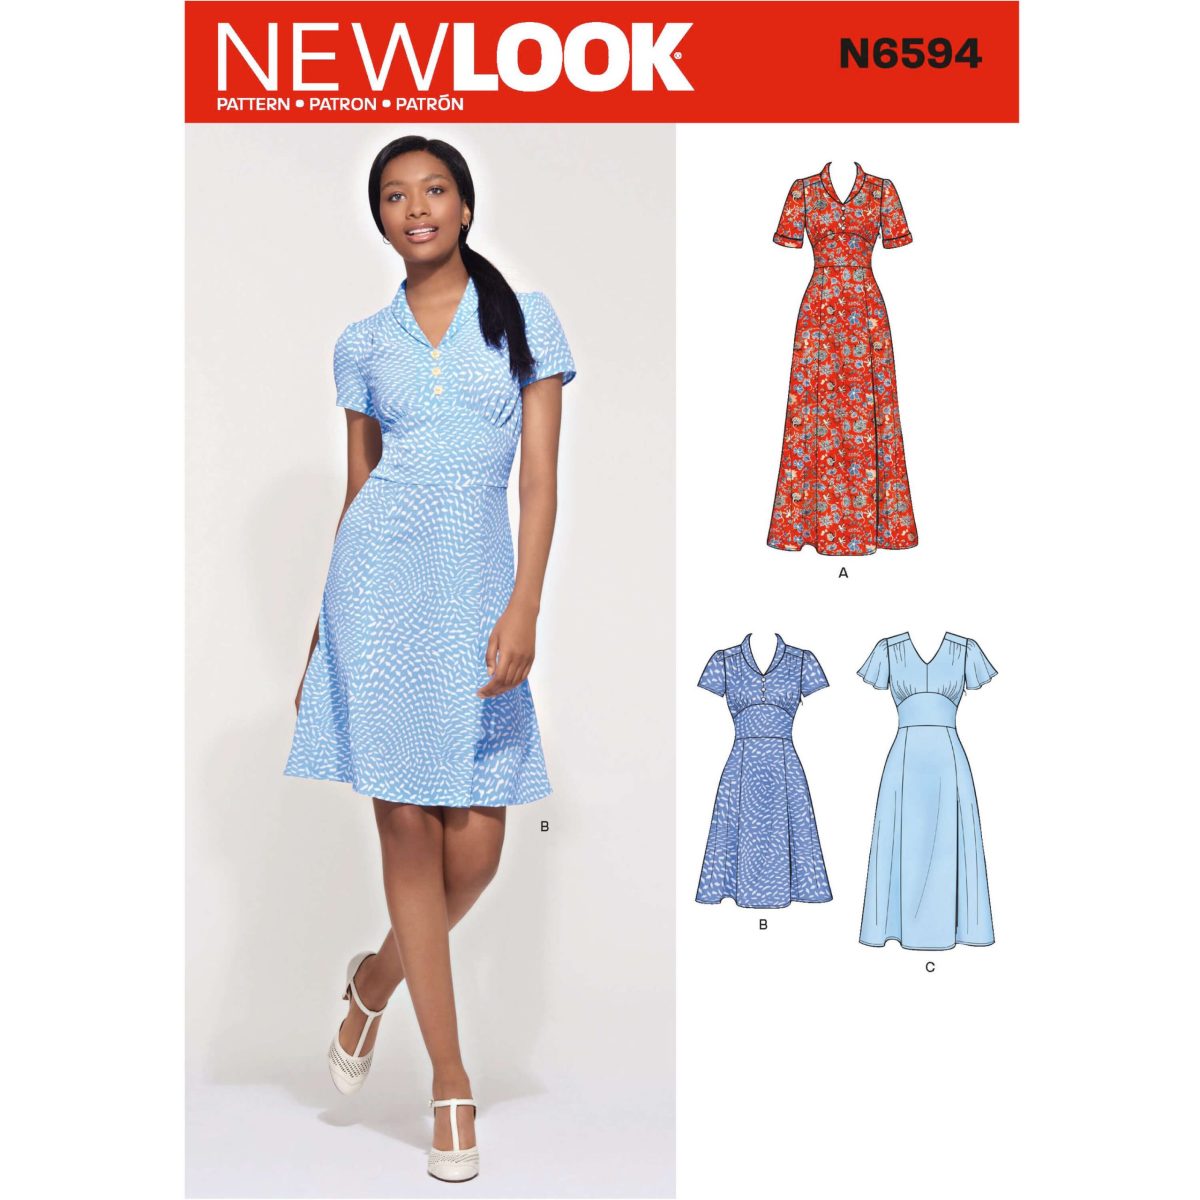 New Look Pattern N6594 Misses' Dress In Three Lengths